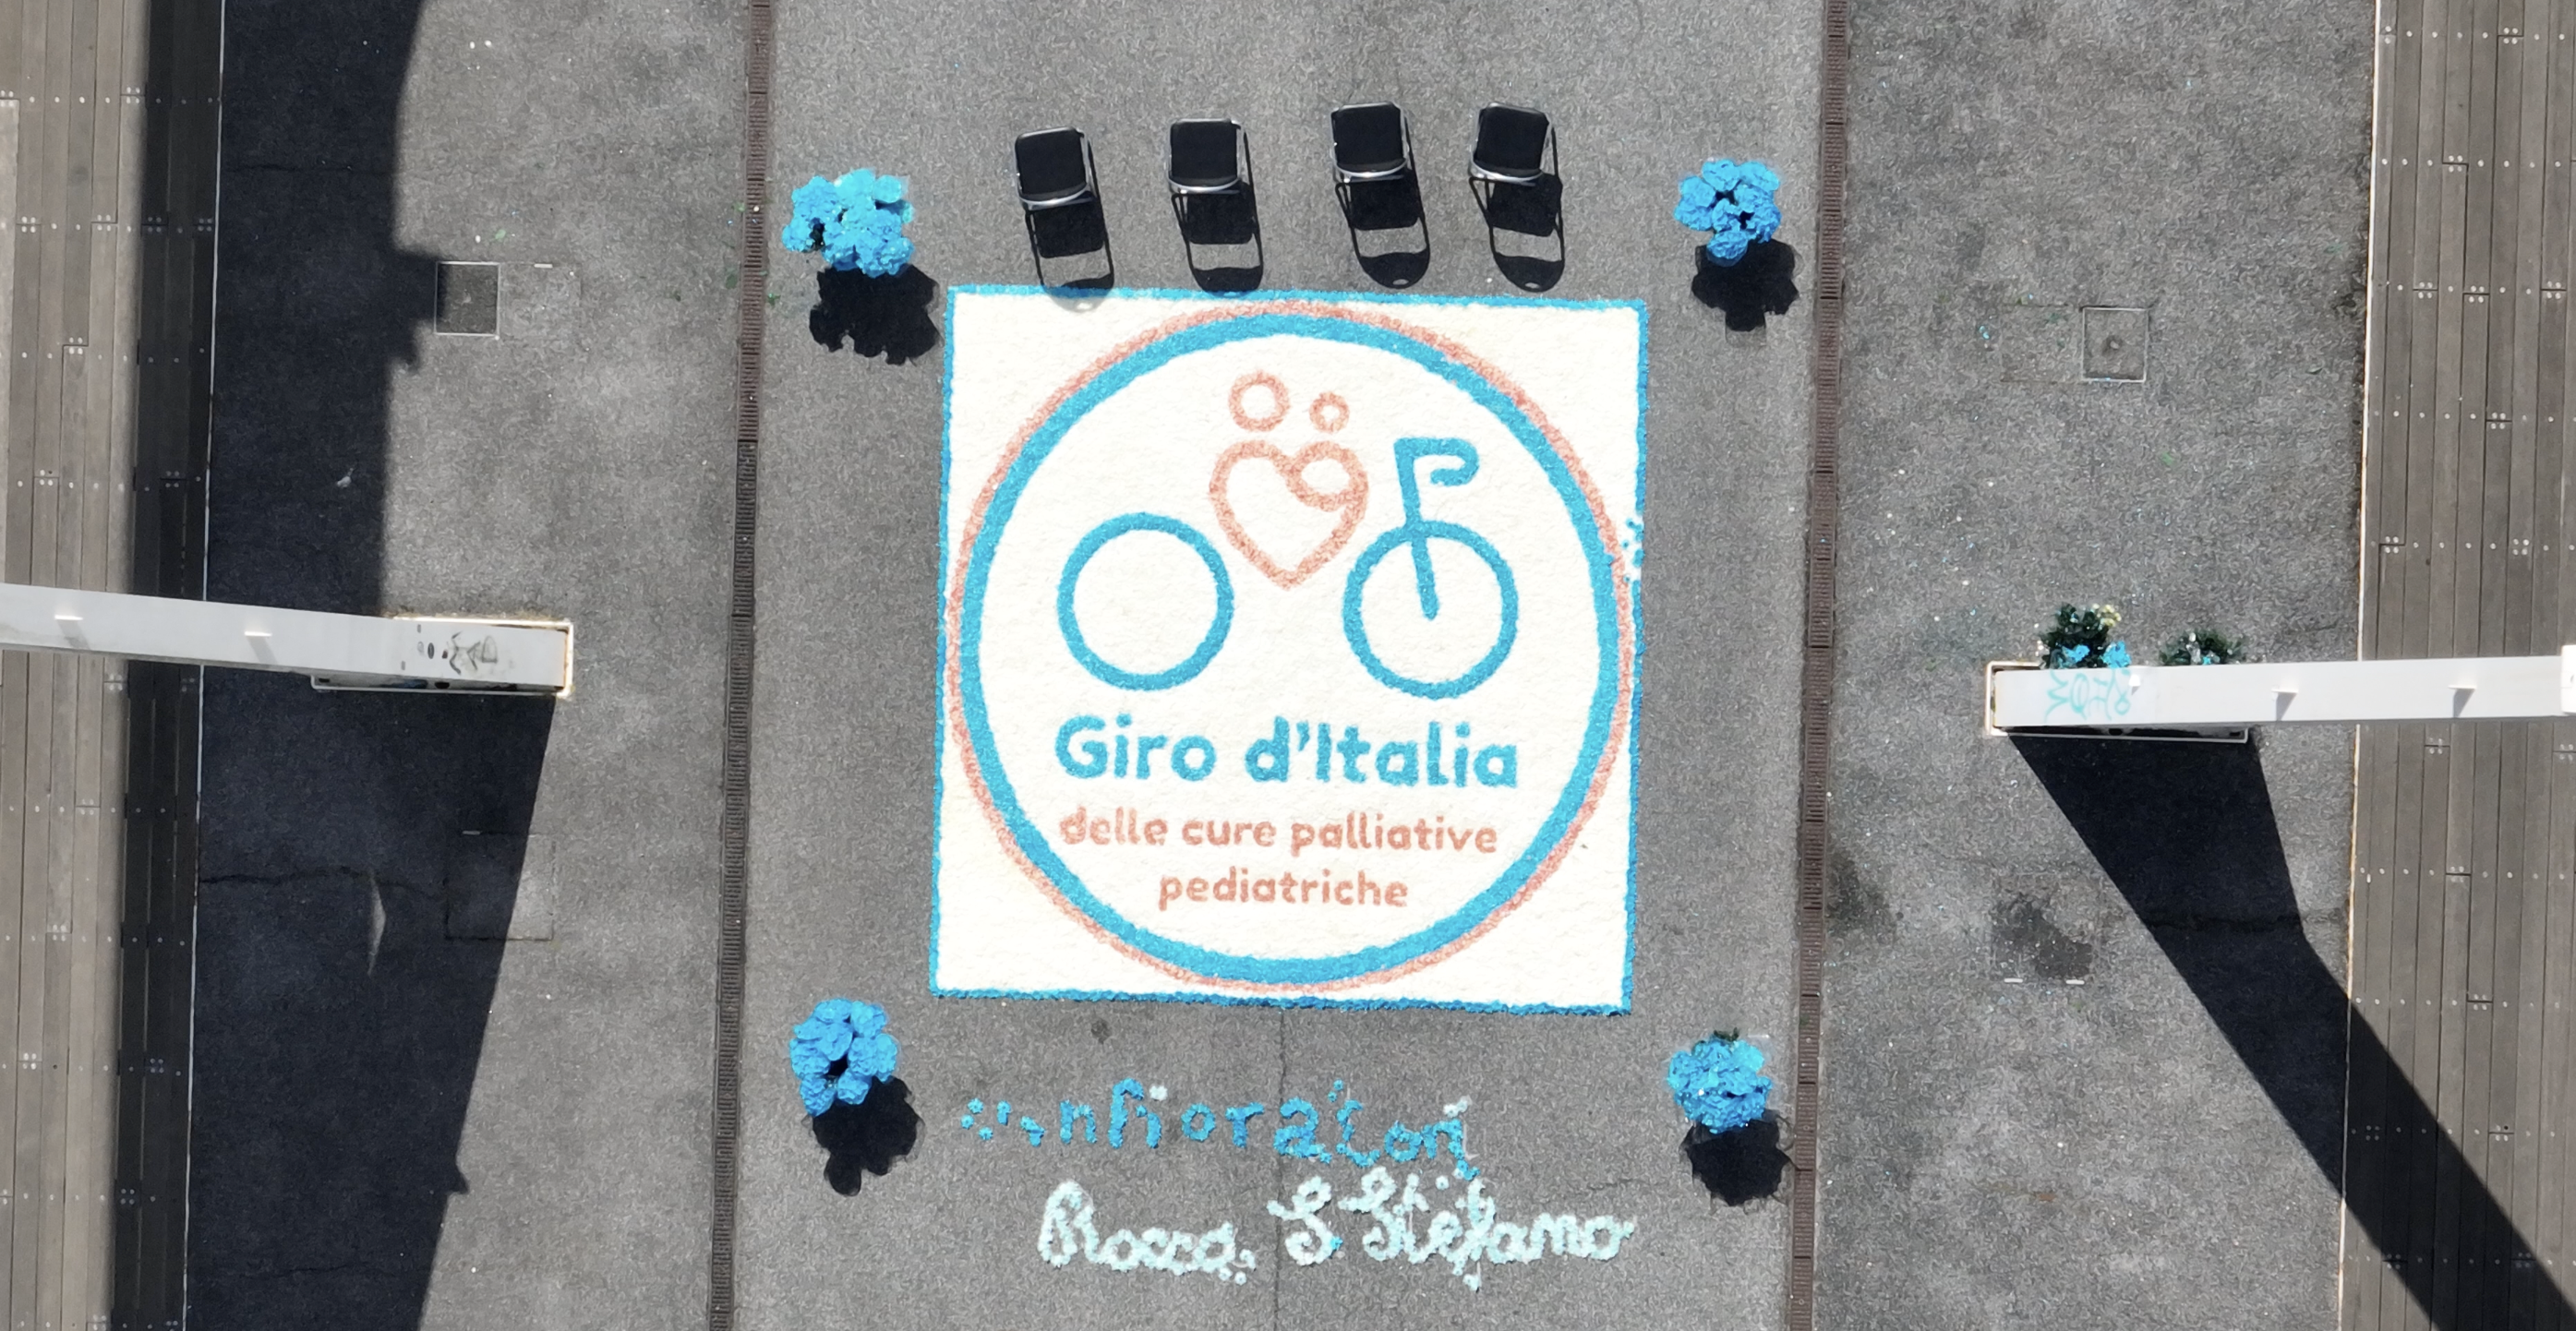 Partita la 3°edizione del Giro d’Italia delle Cure Palliative pediatriche